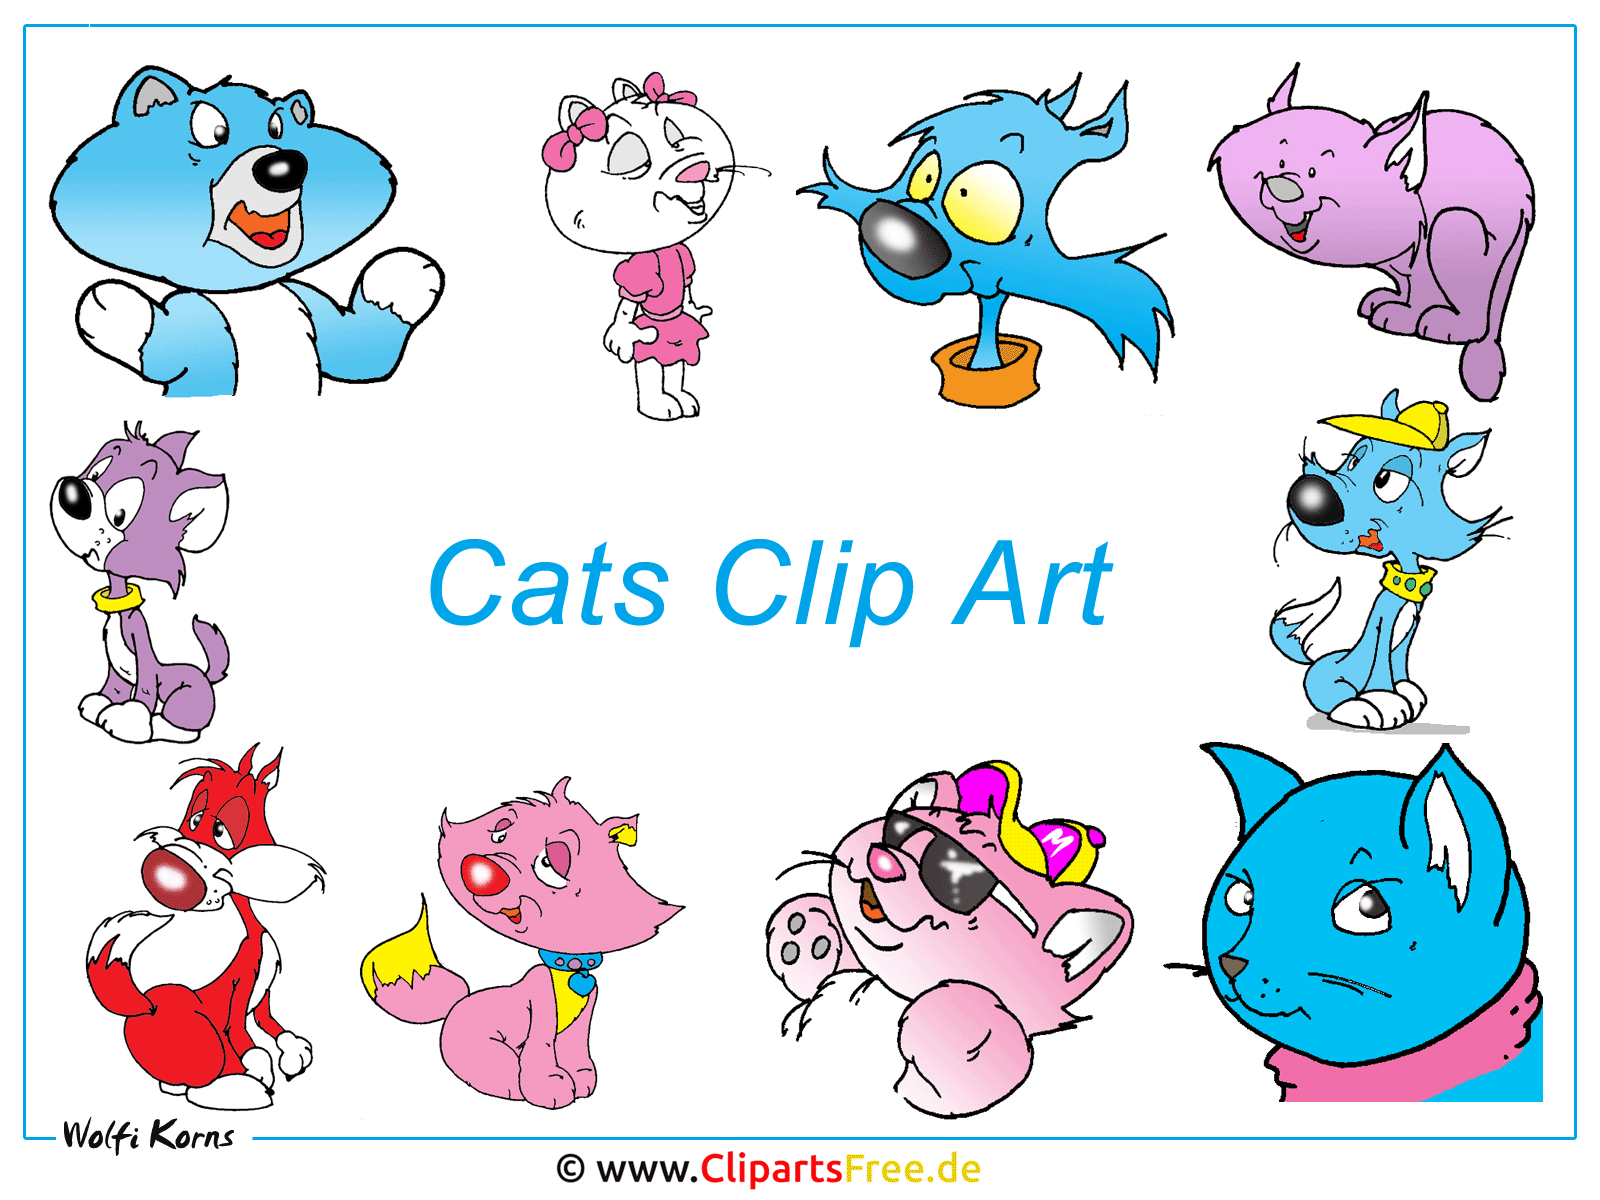 無料の壁紙 猫クリップアート画像